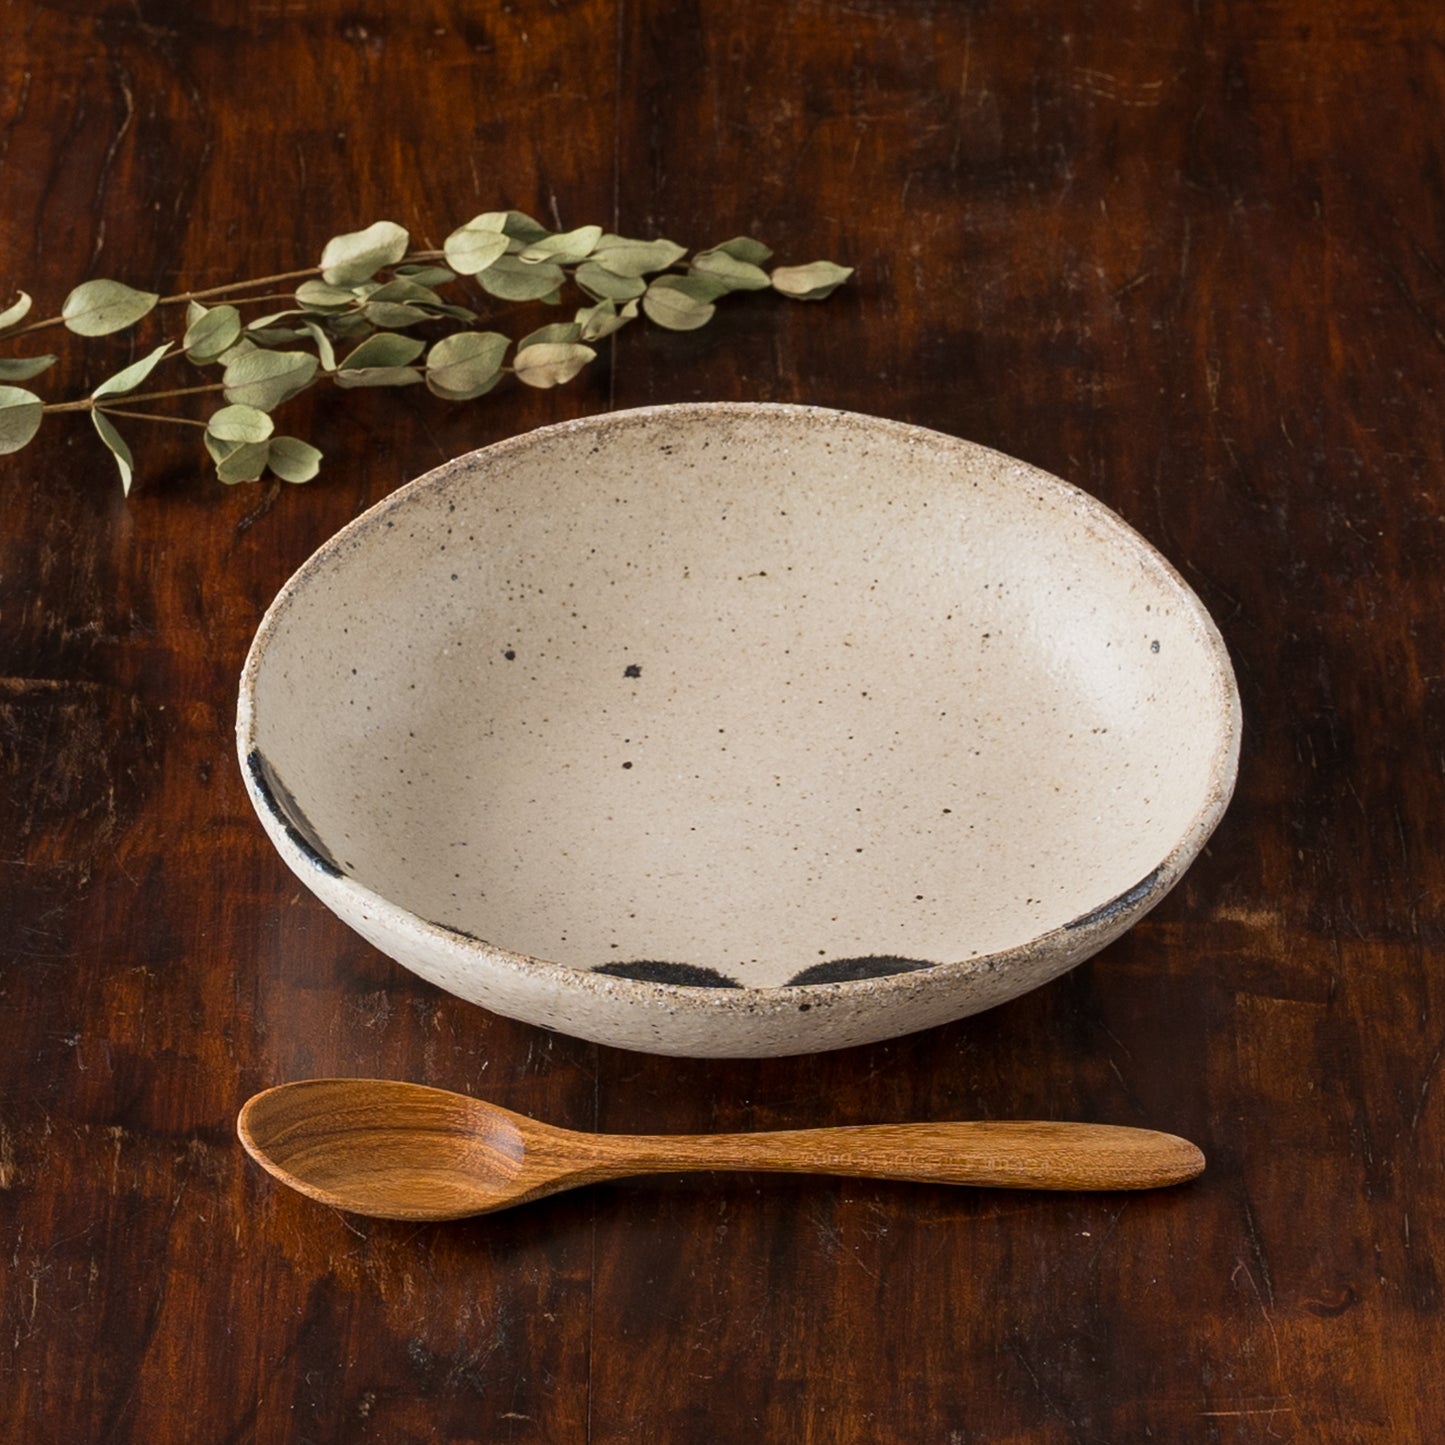 スープやシリアルにもぴったり合う岡村朝子さんのお花柄の楕円皿